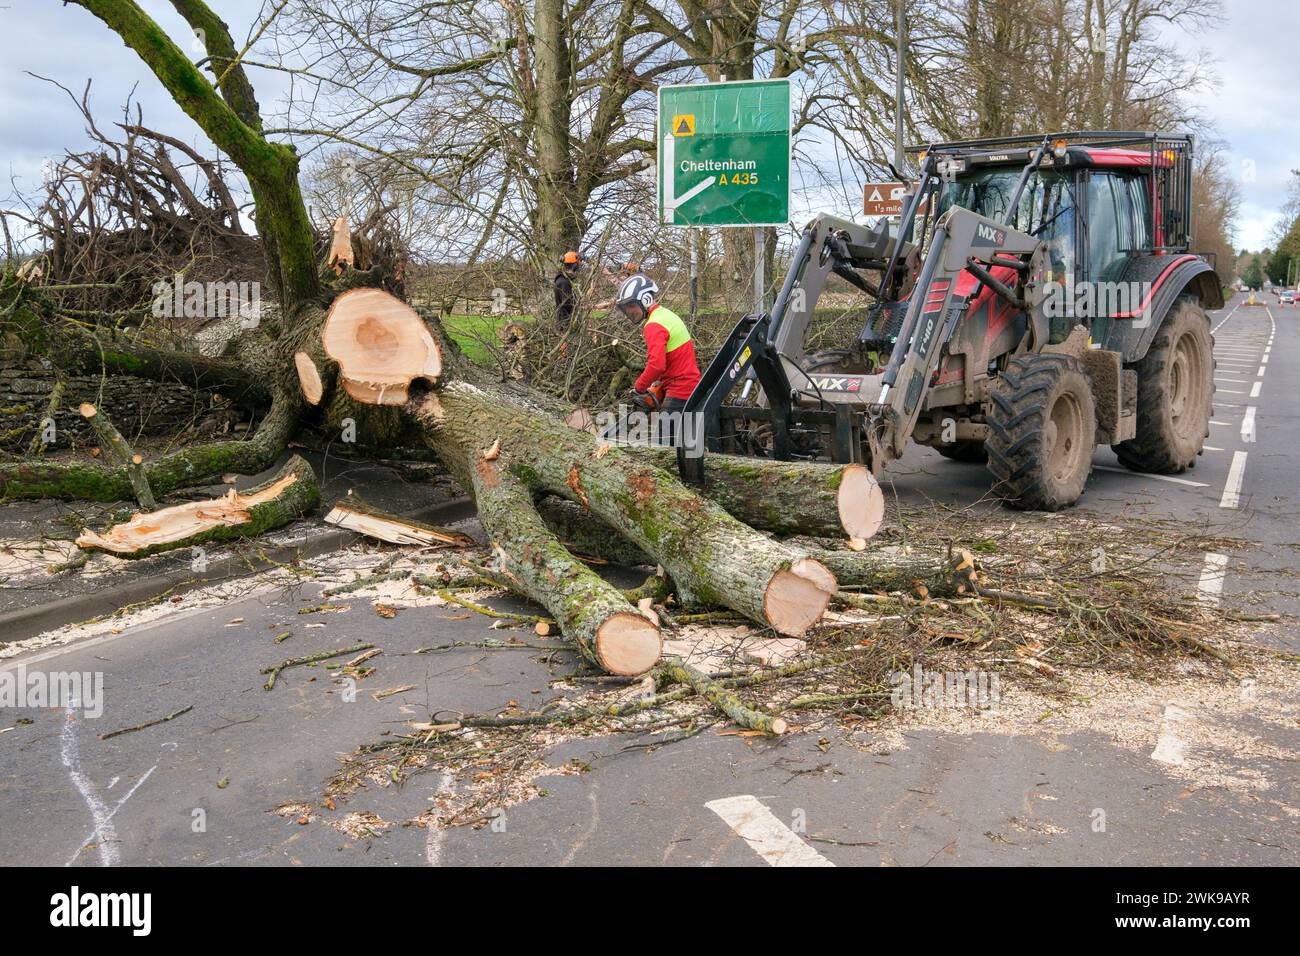 Die Arbeiter räumen einen Baum, der fiel und die A417 an der A435-Kreuzung in Cirencester blockierte, während der Sturm Pia starke Winde auslöste. Ein kleiner Vauxhall-Wagen wurde unter den äußeren Ästen des Baumes gefangen und zerquetscht, die Insassen waren in Ordnung. Stockfoto